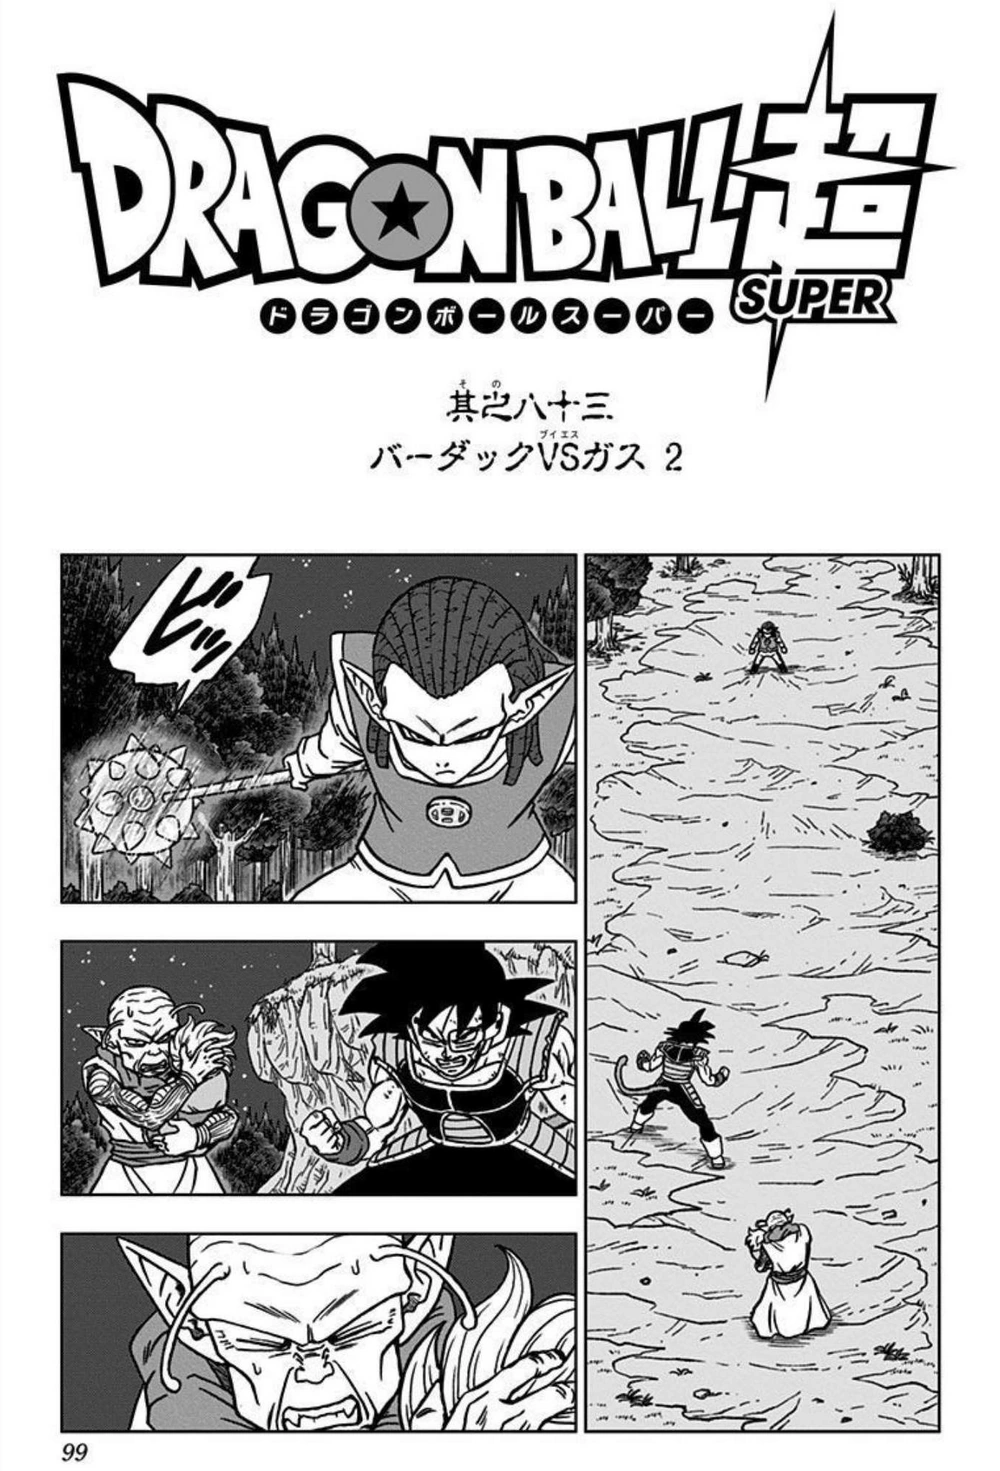 VIZ  Read Dragon Ball, Chapter 91 Manga - Official Shonen Jump From Japan